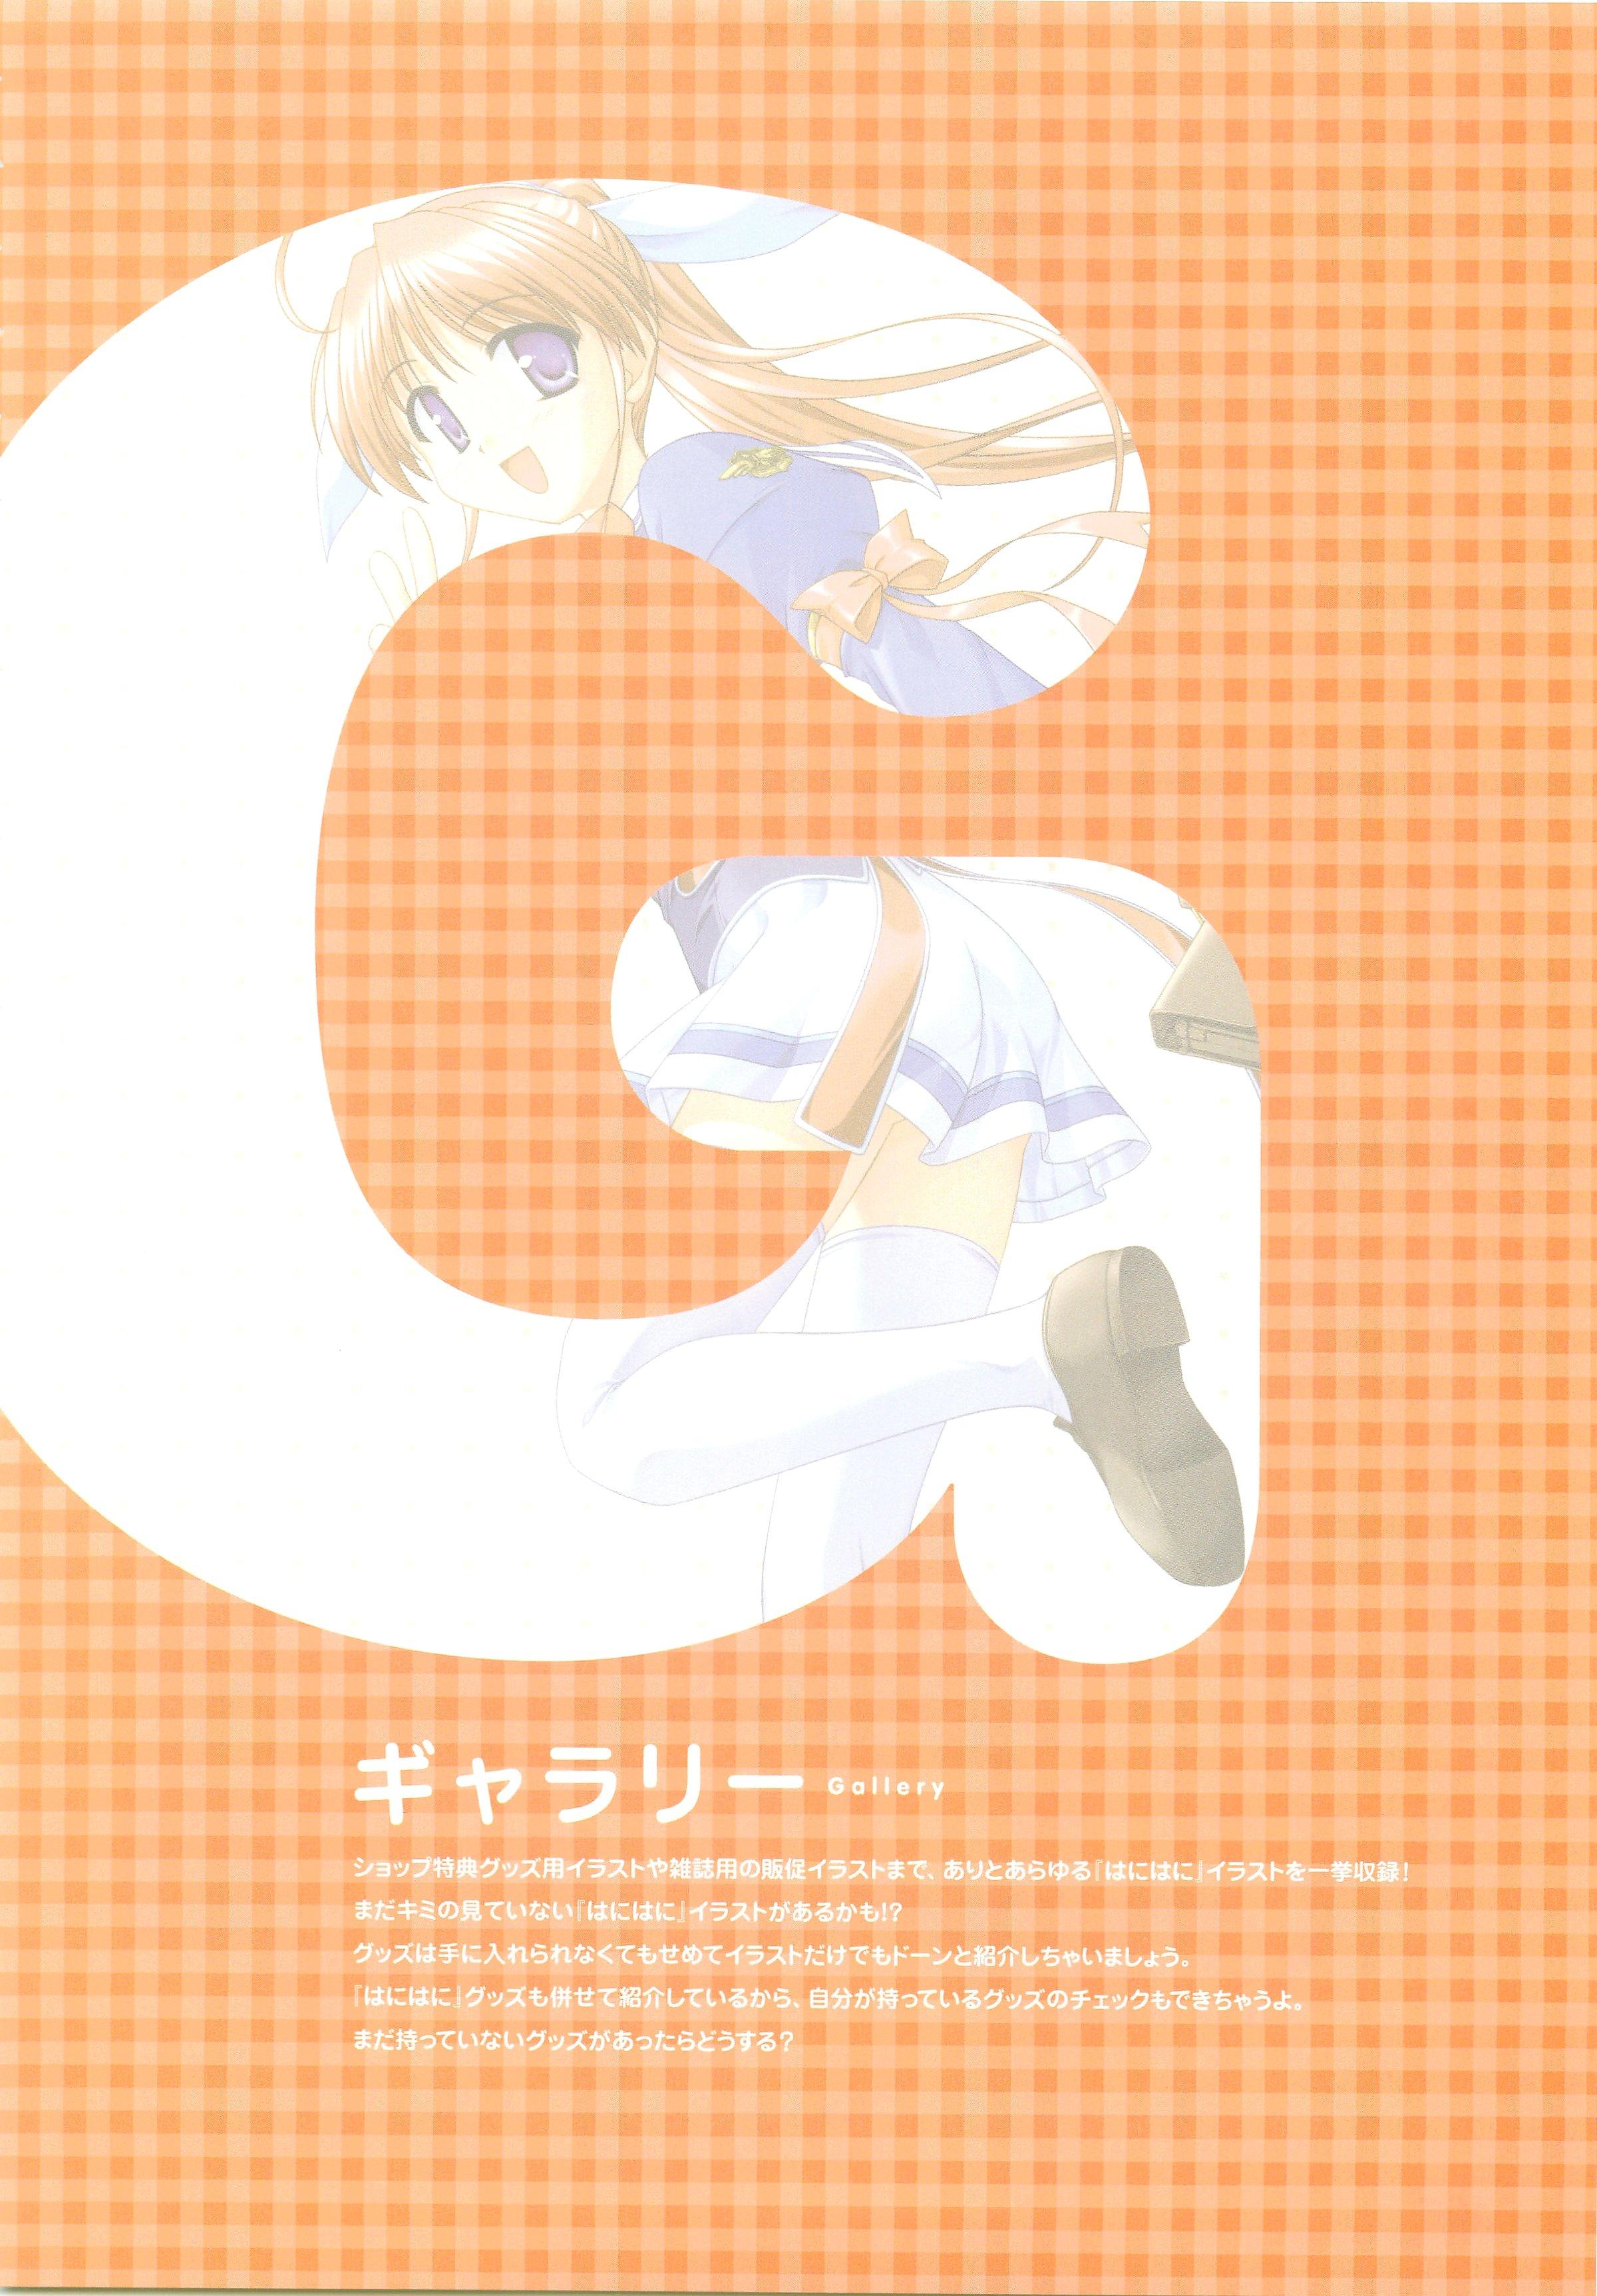 Tsuki wa Higashi ni Hi wa Nishi ni ～ Operation Sanctuary ～ Visual Fan Book 201